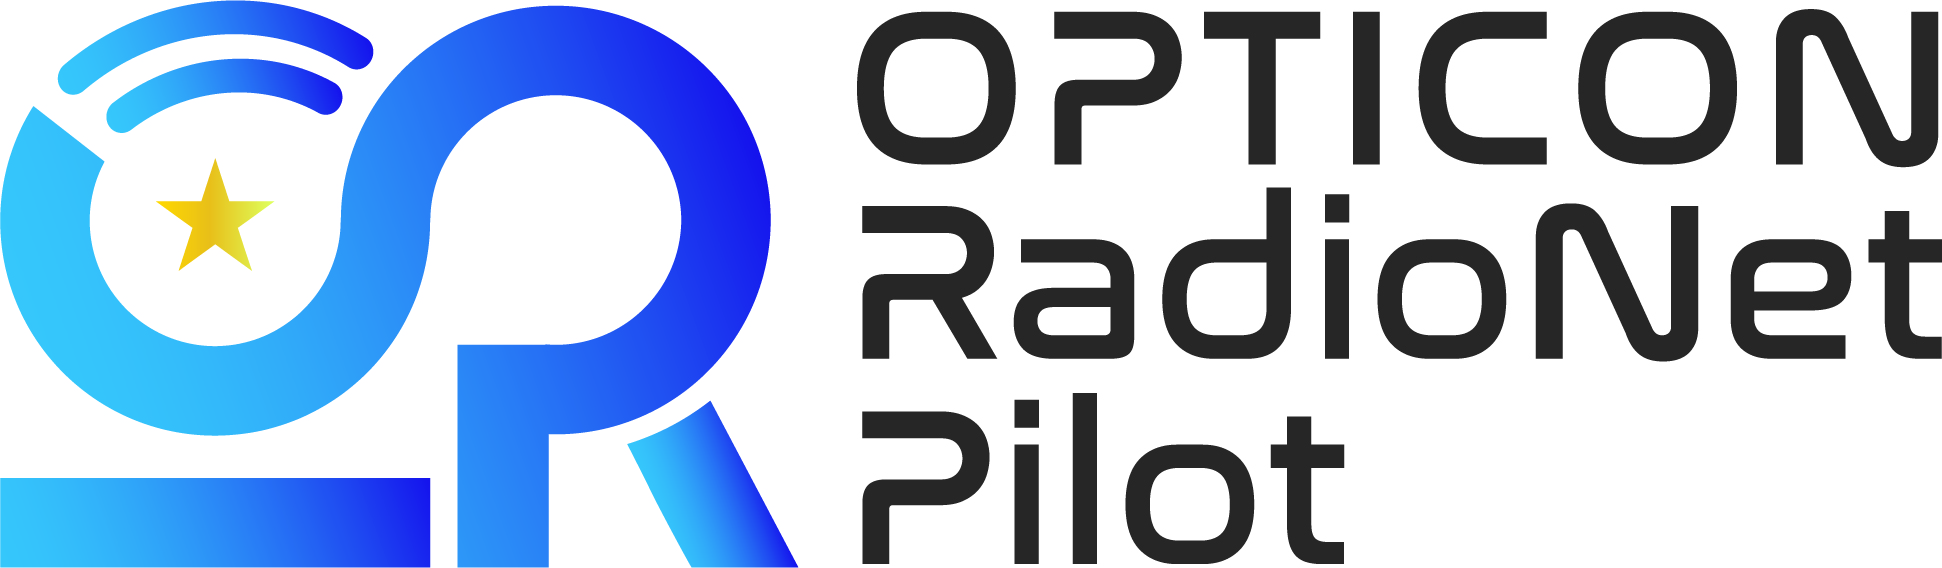 ORP Logo